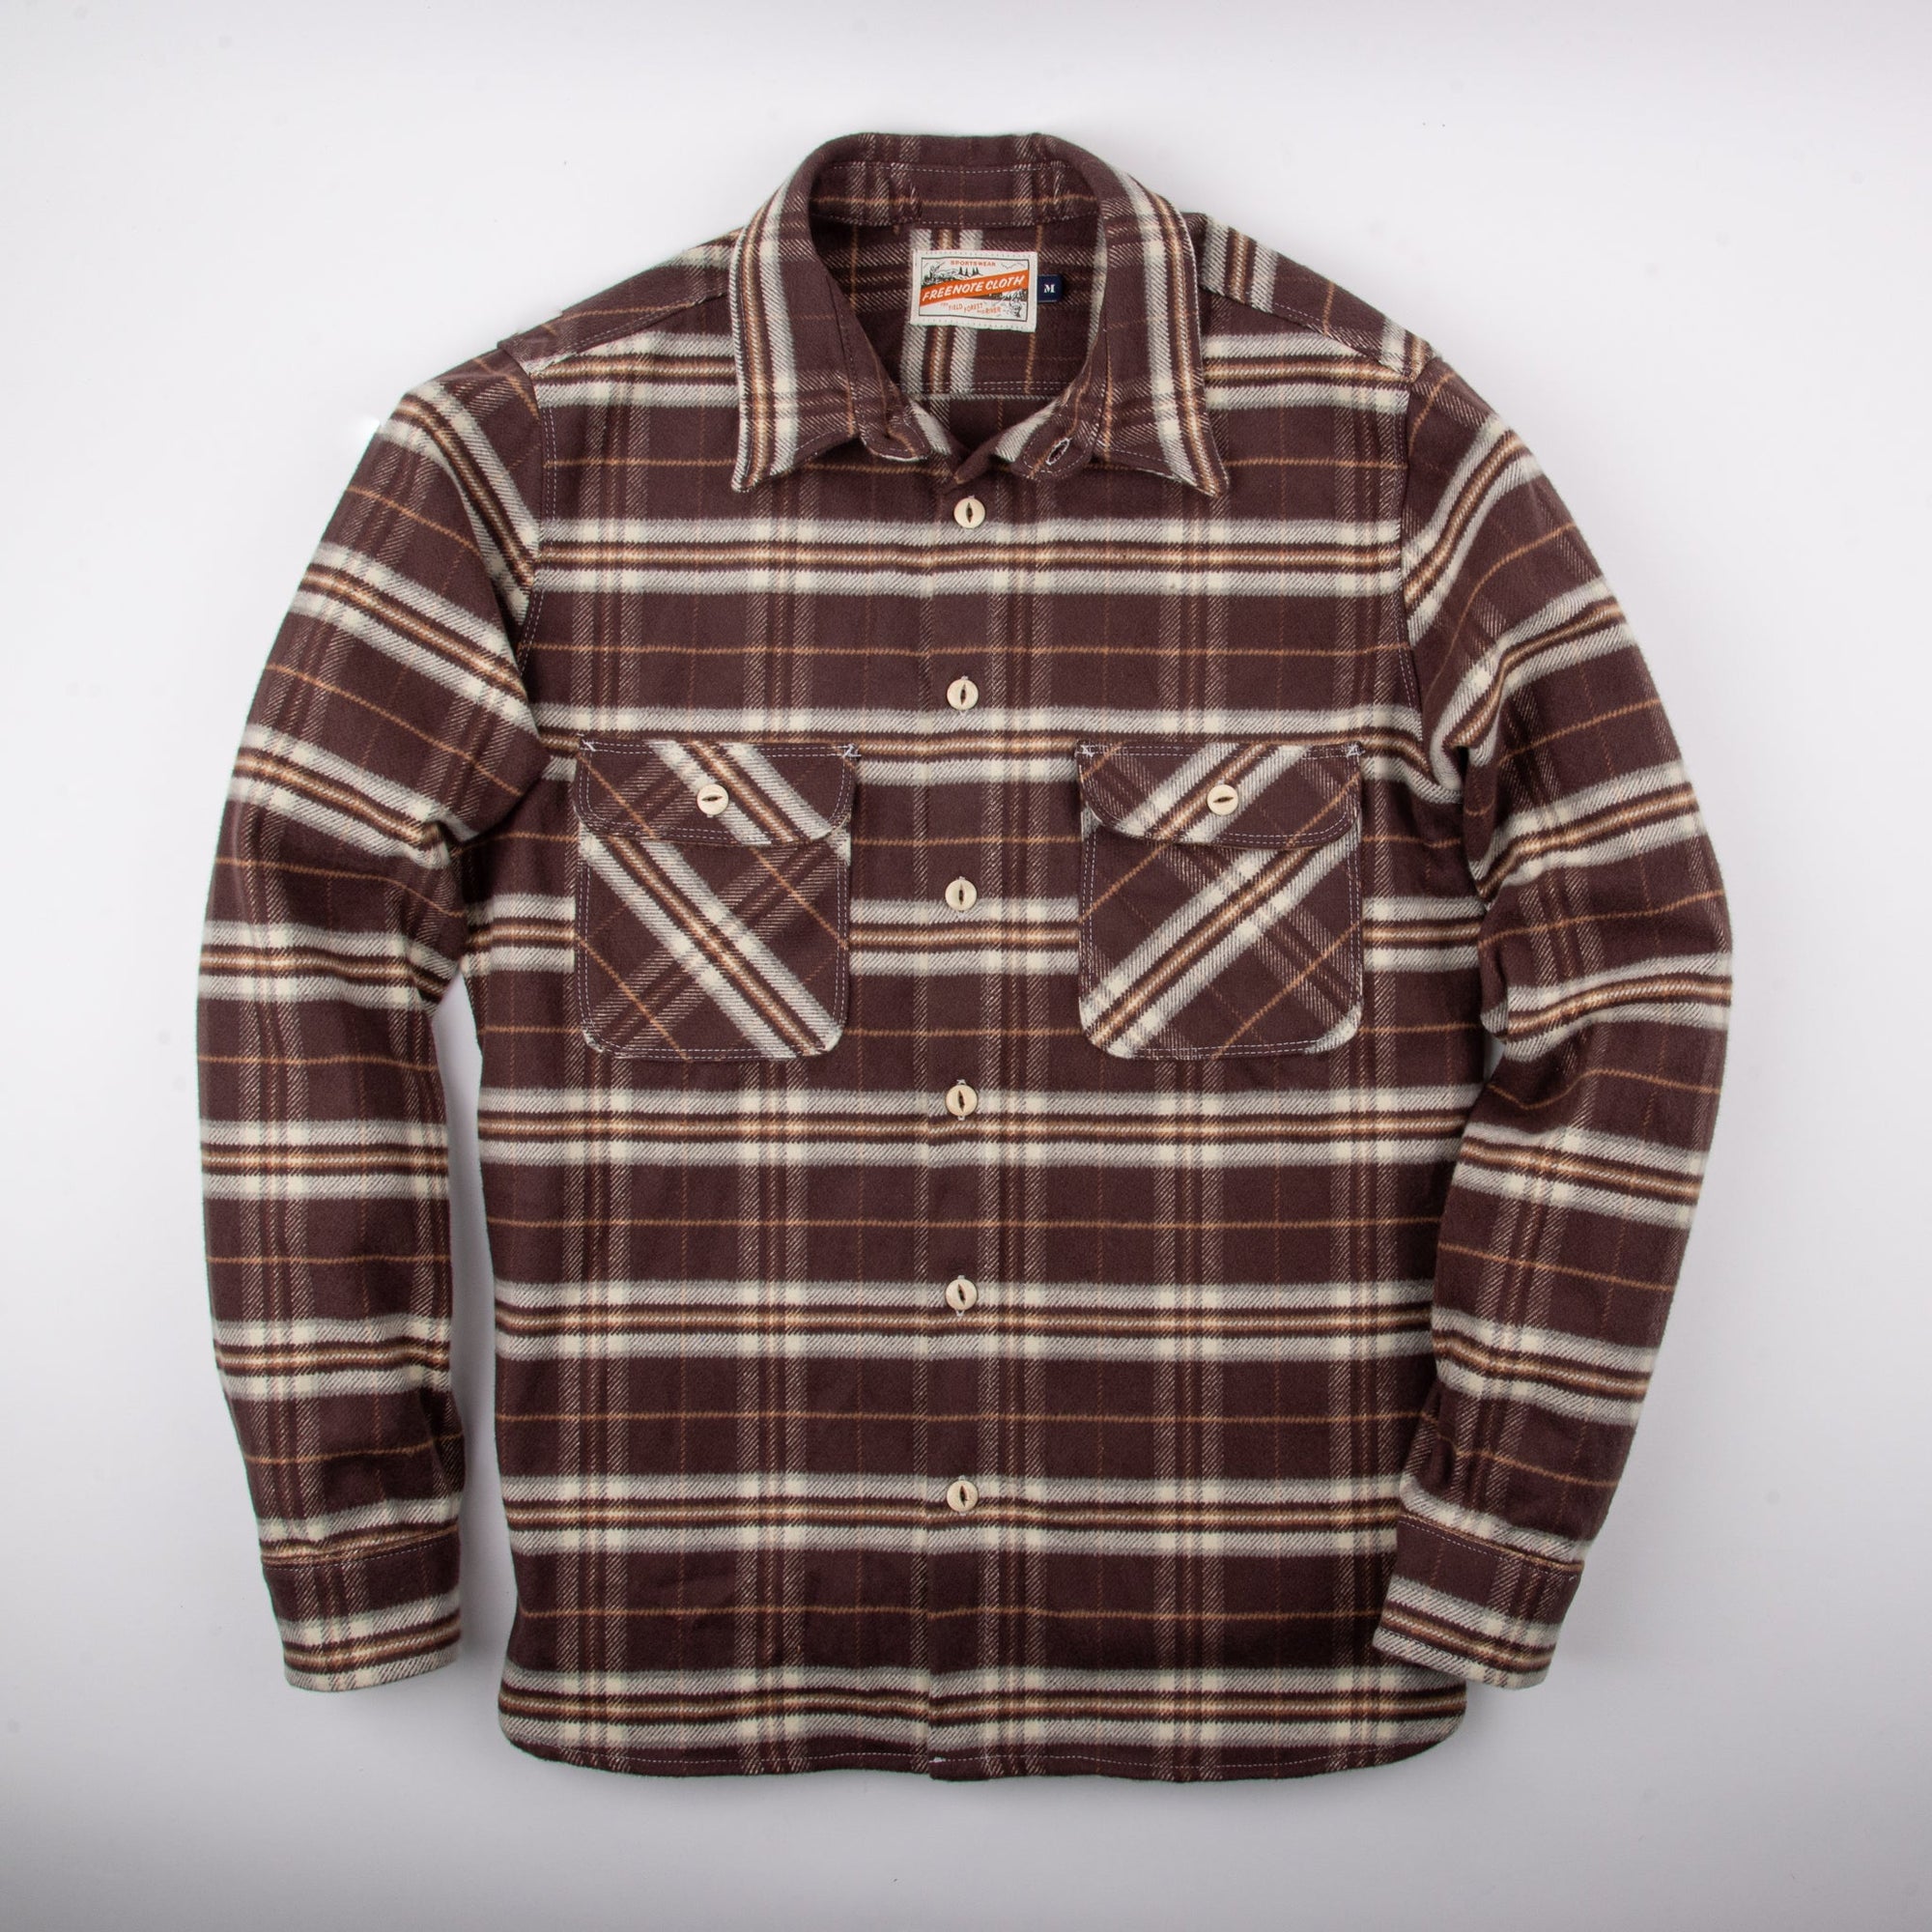 Freenote Cloth Benson Southwestern Brushed Jacquard Shirt - Olive Southwest, Long Sleeve Shirts